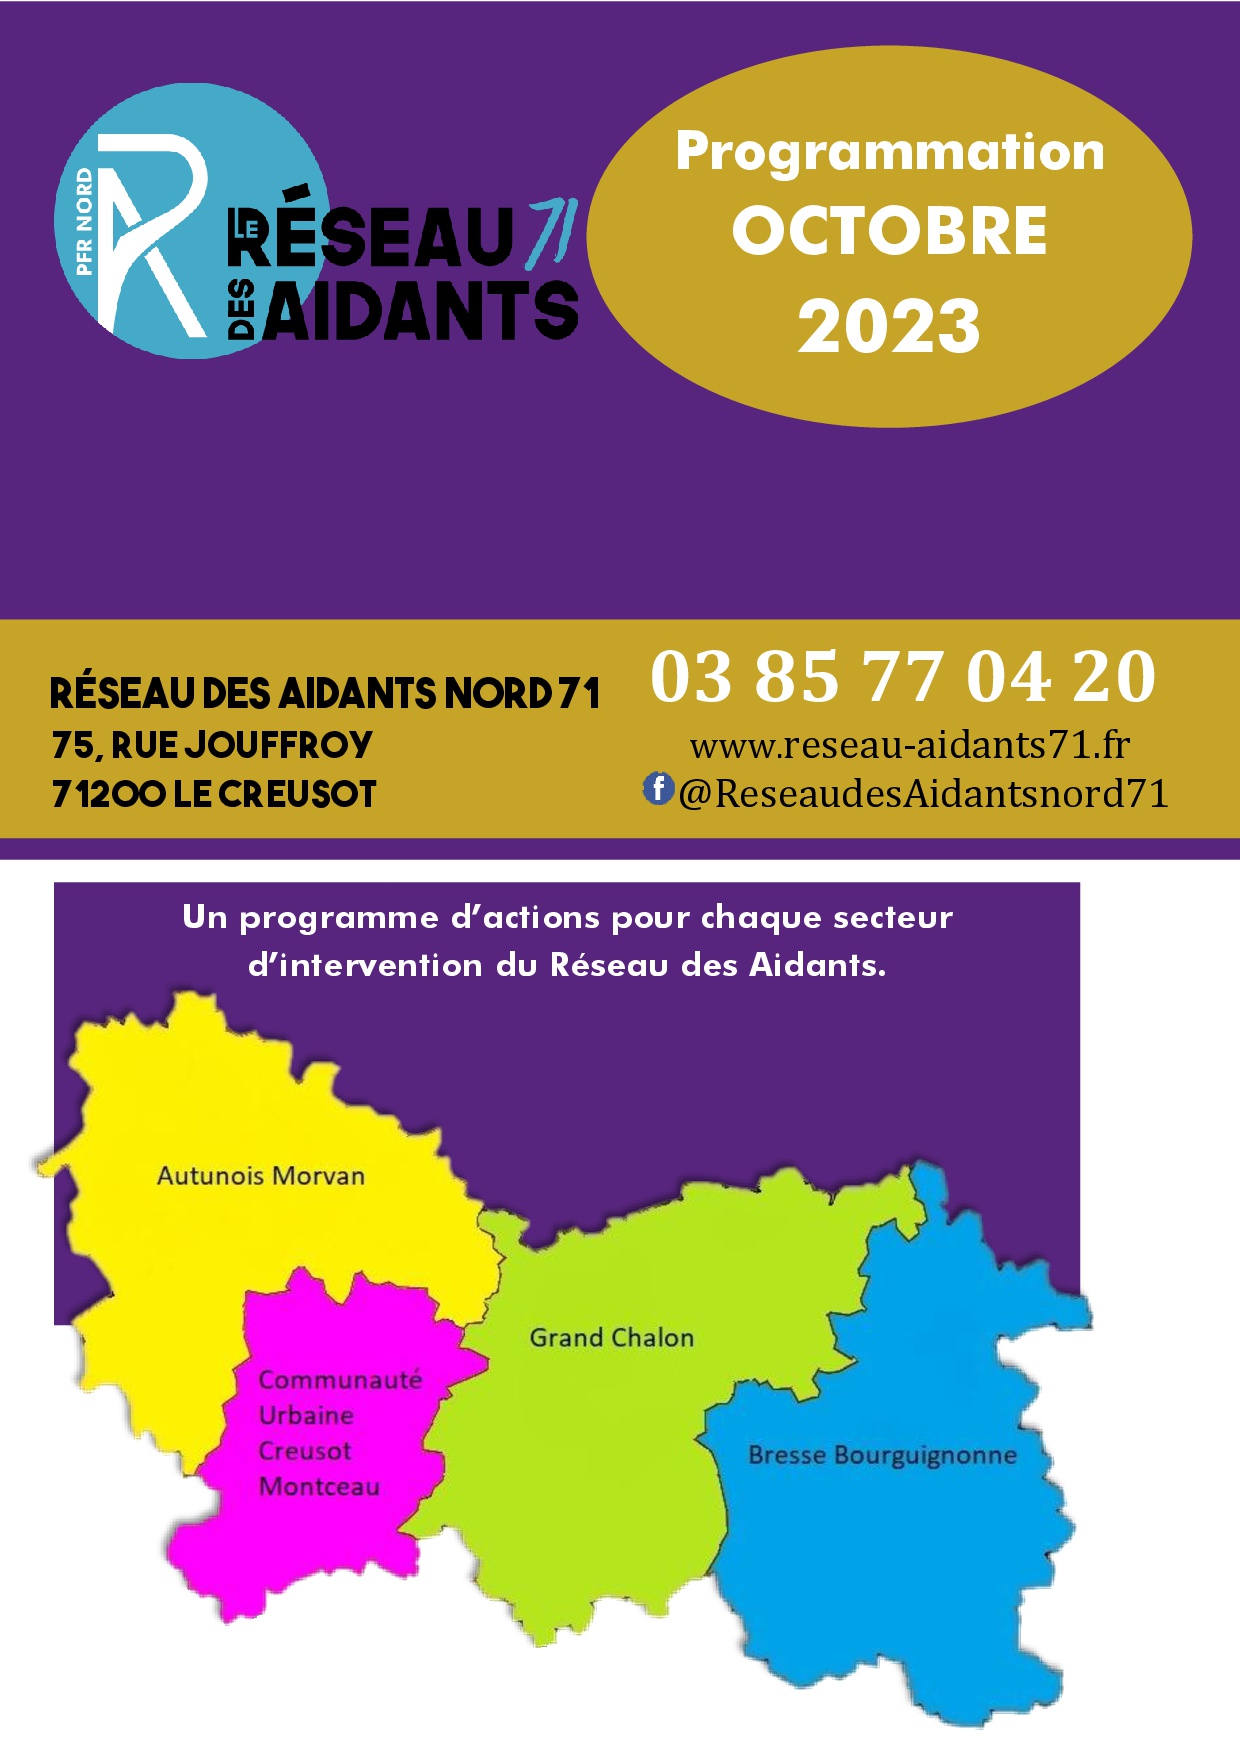 programme actions Réseau des aidants Nord 71 octobre 2023